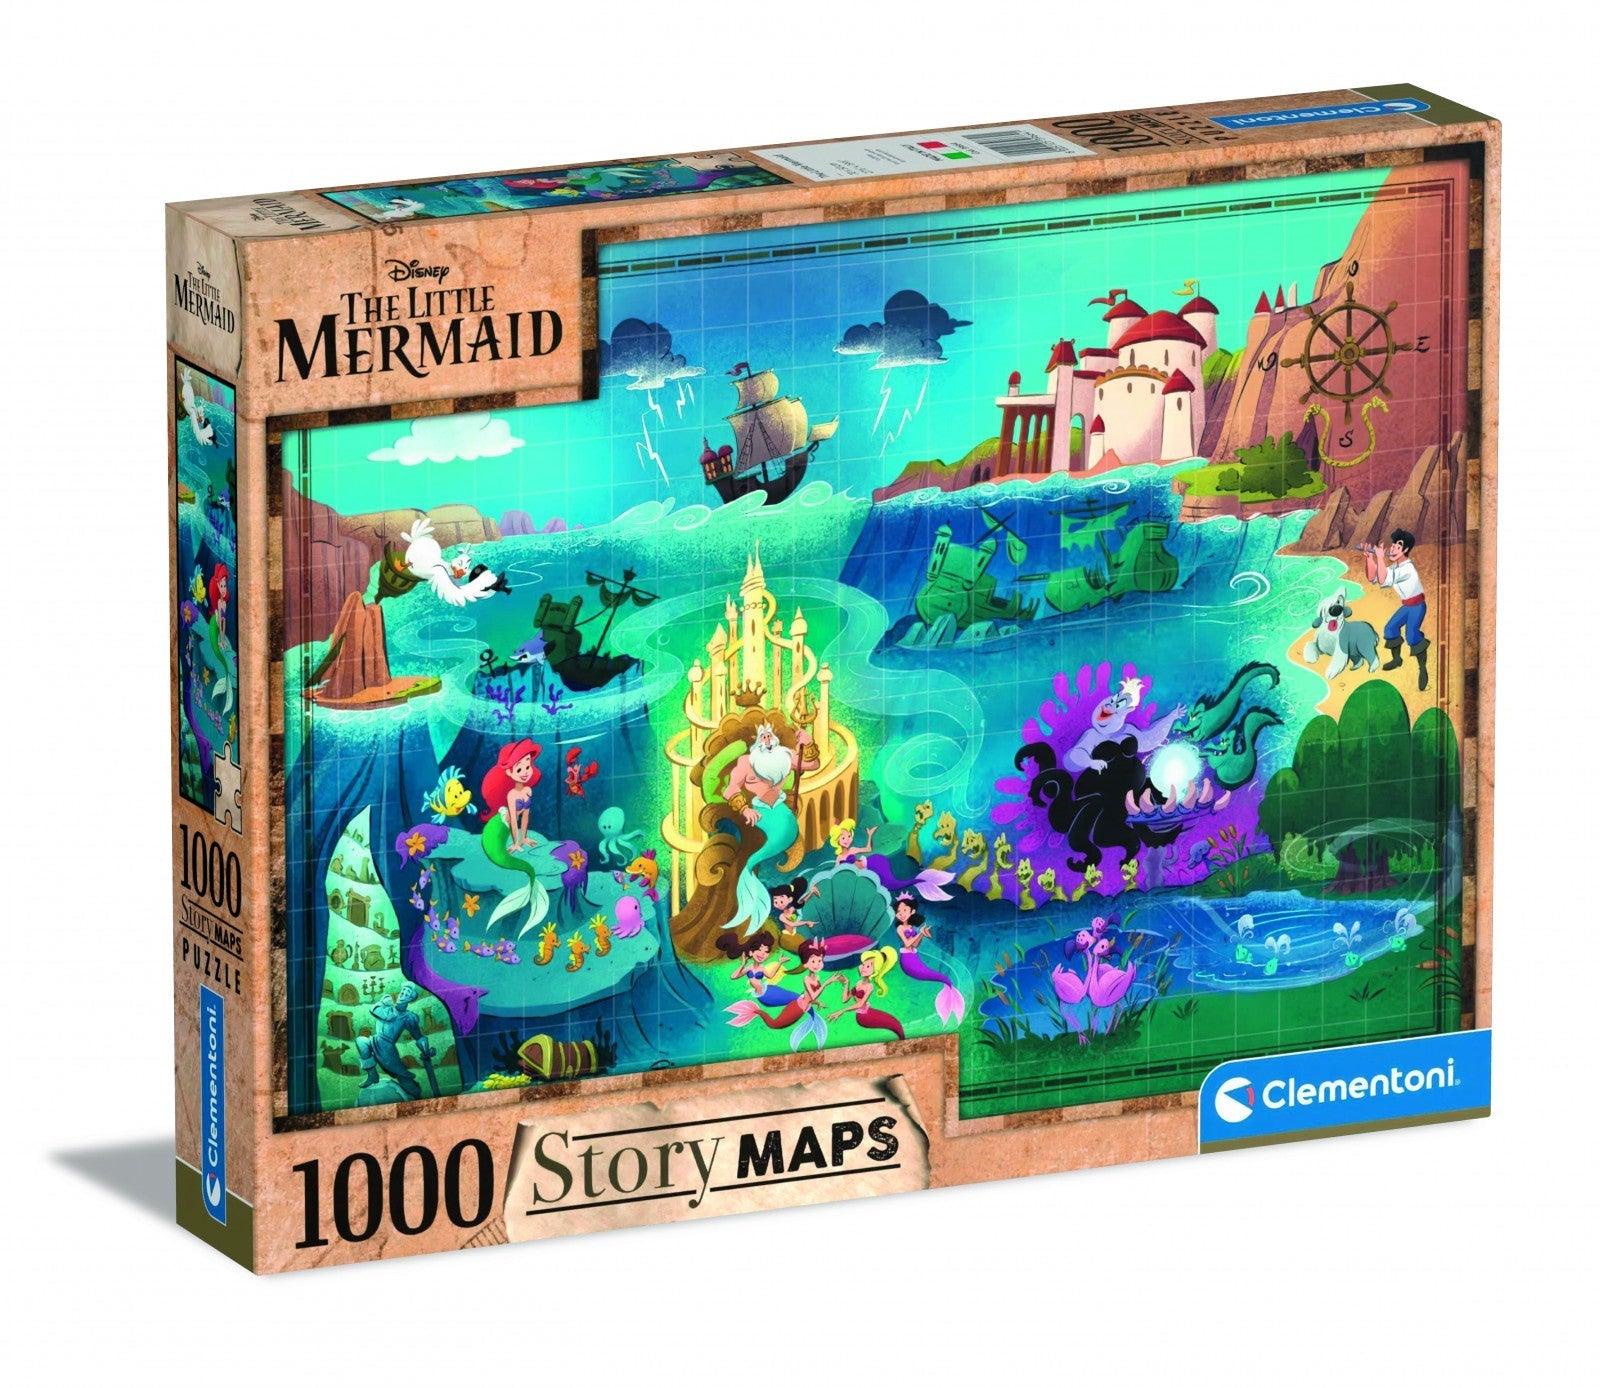 VR-97660 Clementoni Puzzle The Little Mermaid Story Maps 1000 pieces - Clementoni - Titan Pop Culture